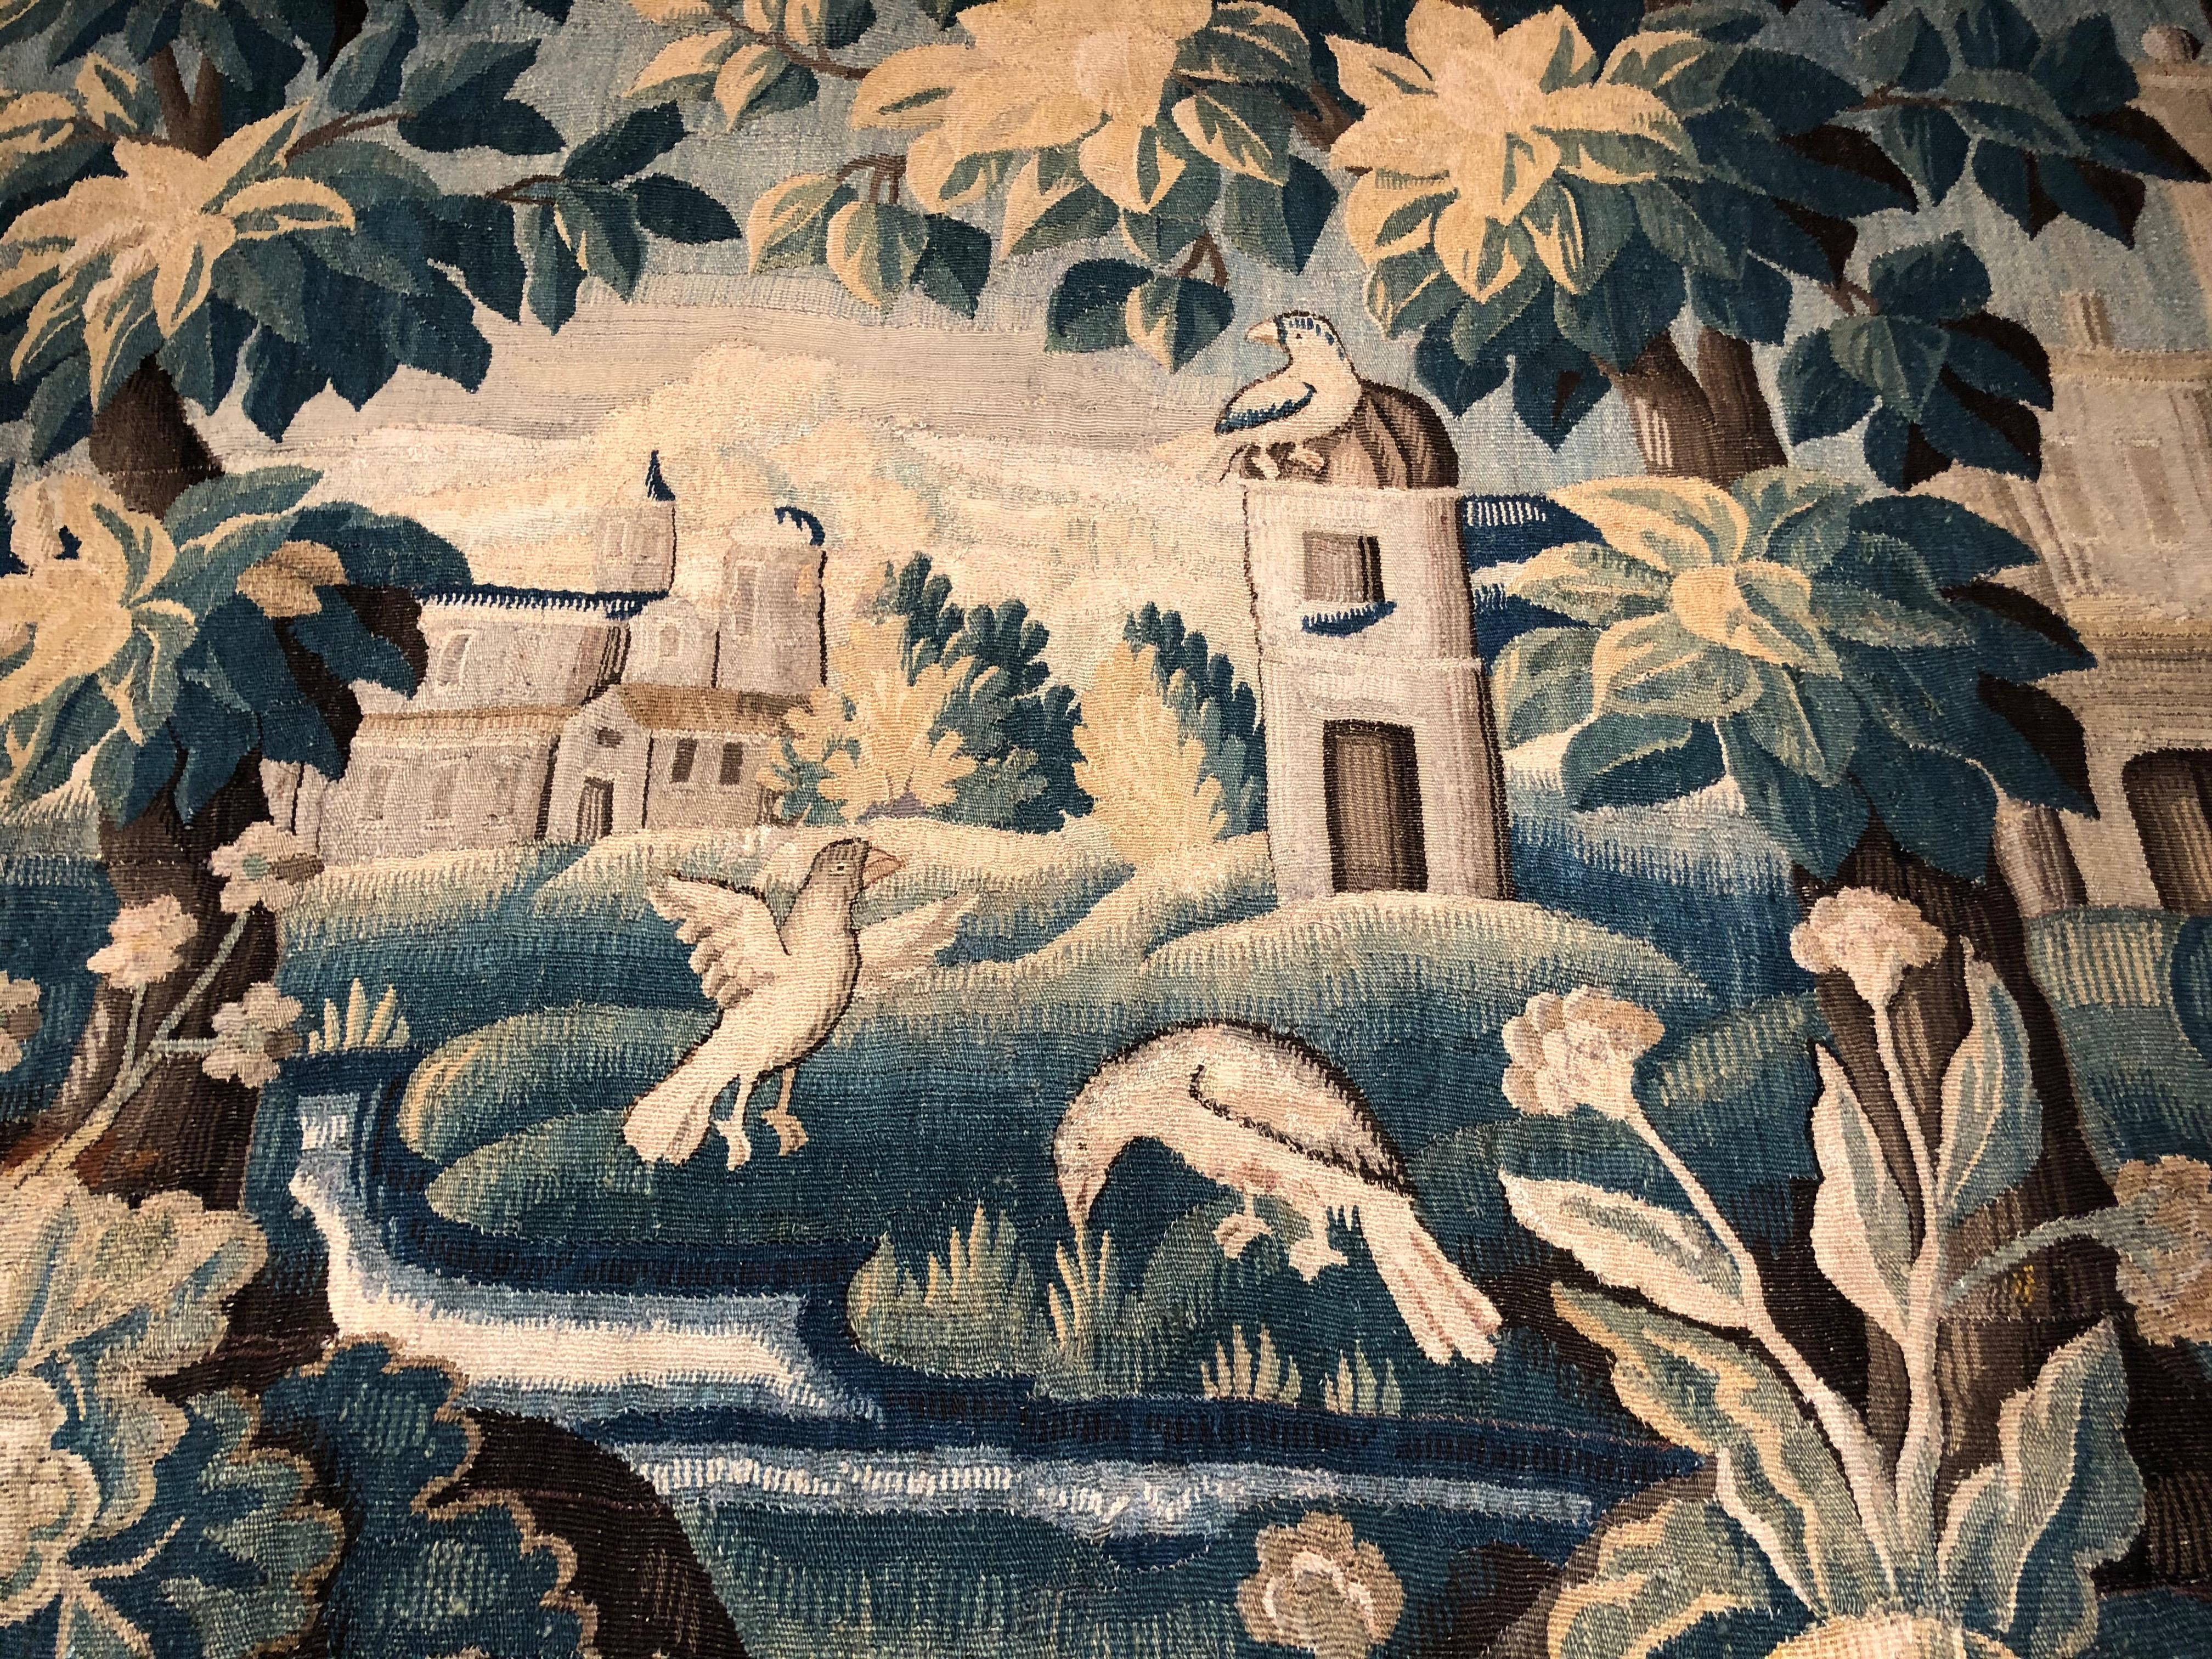 Tapisserie d'Aubusson en Verdure, française, XVIIIe siècle, tissée à la main en laine avec des rehauts de soie, encadrée d'une bordure florale complète. Deux oiseaux pataugent le long d'un ruisseau sinueux dans ce paysage pittoresque avec une ville